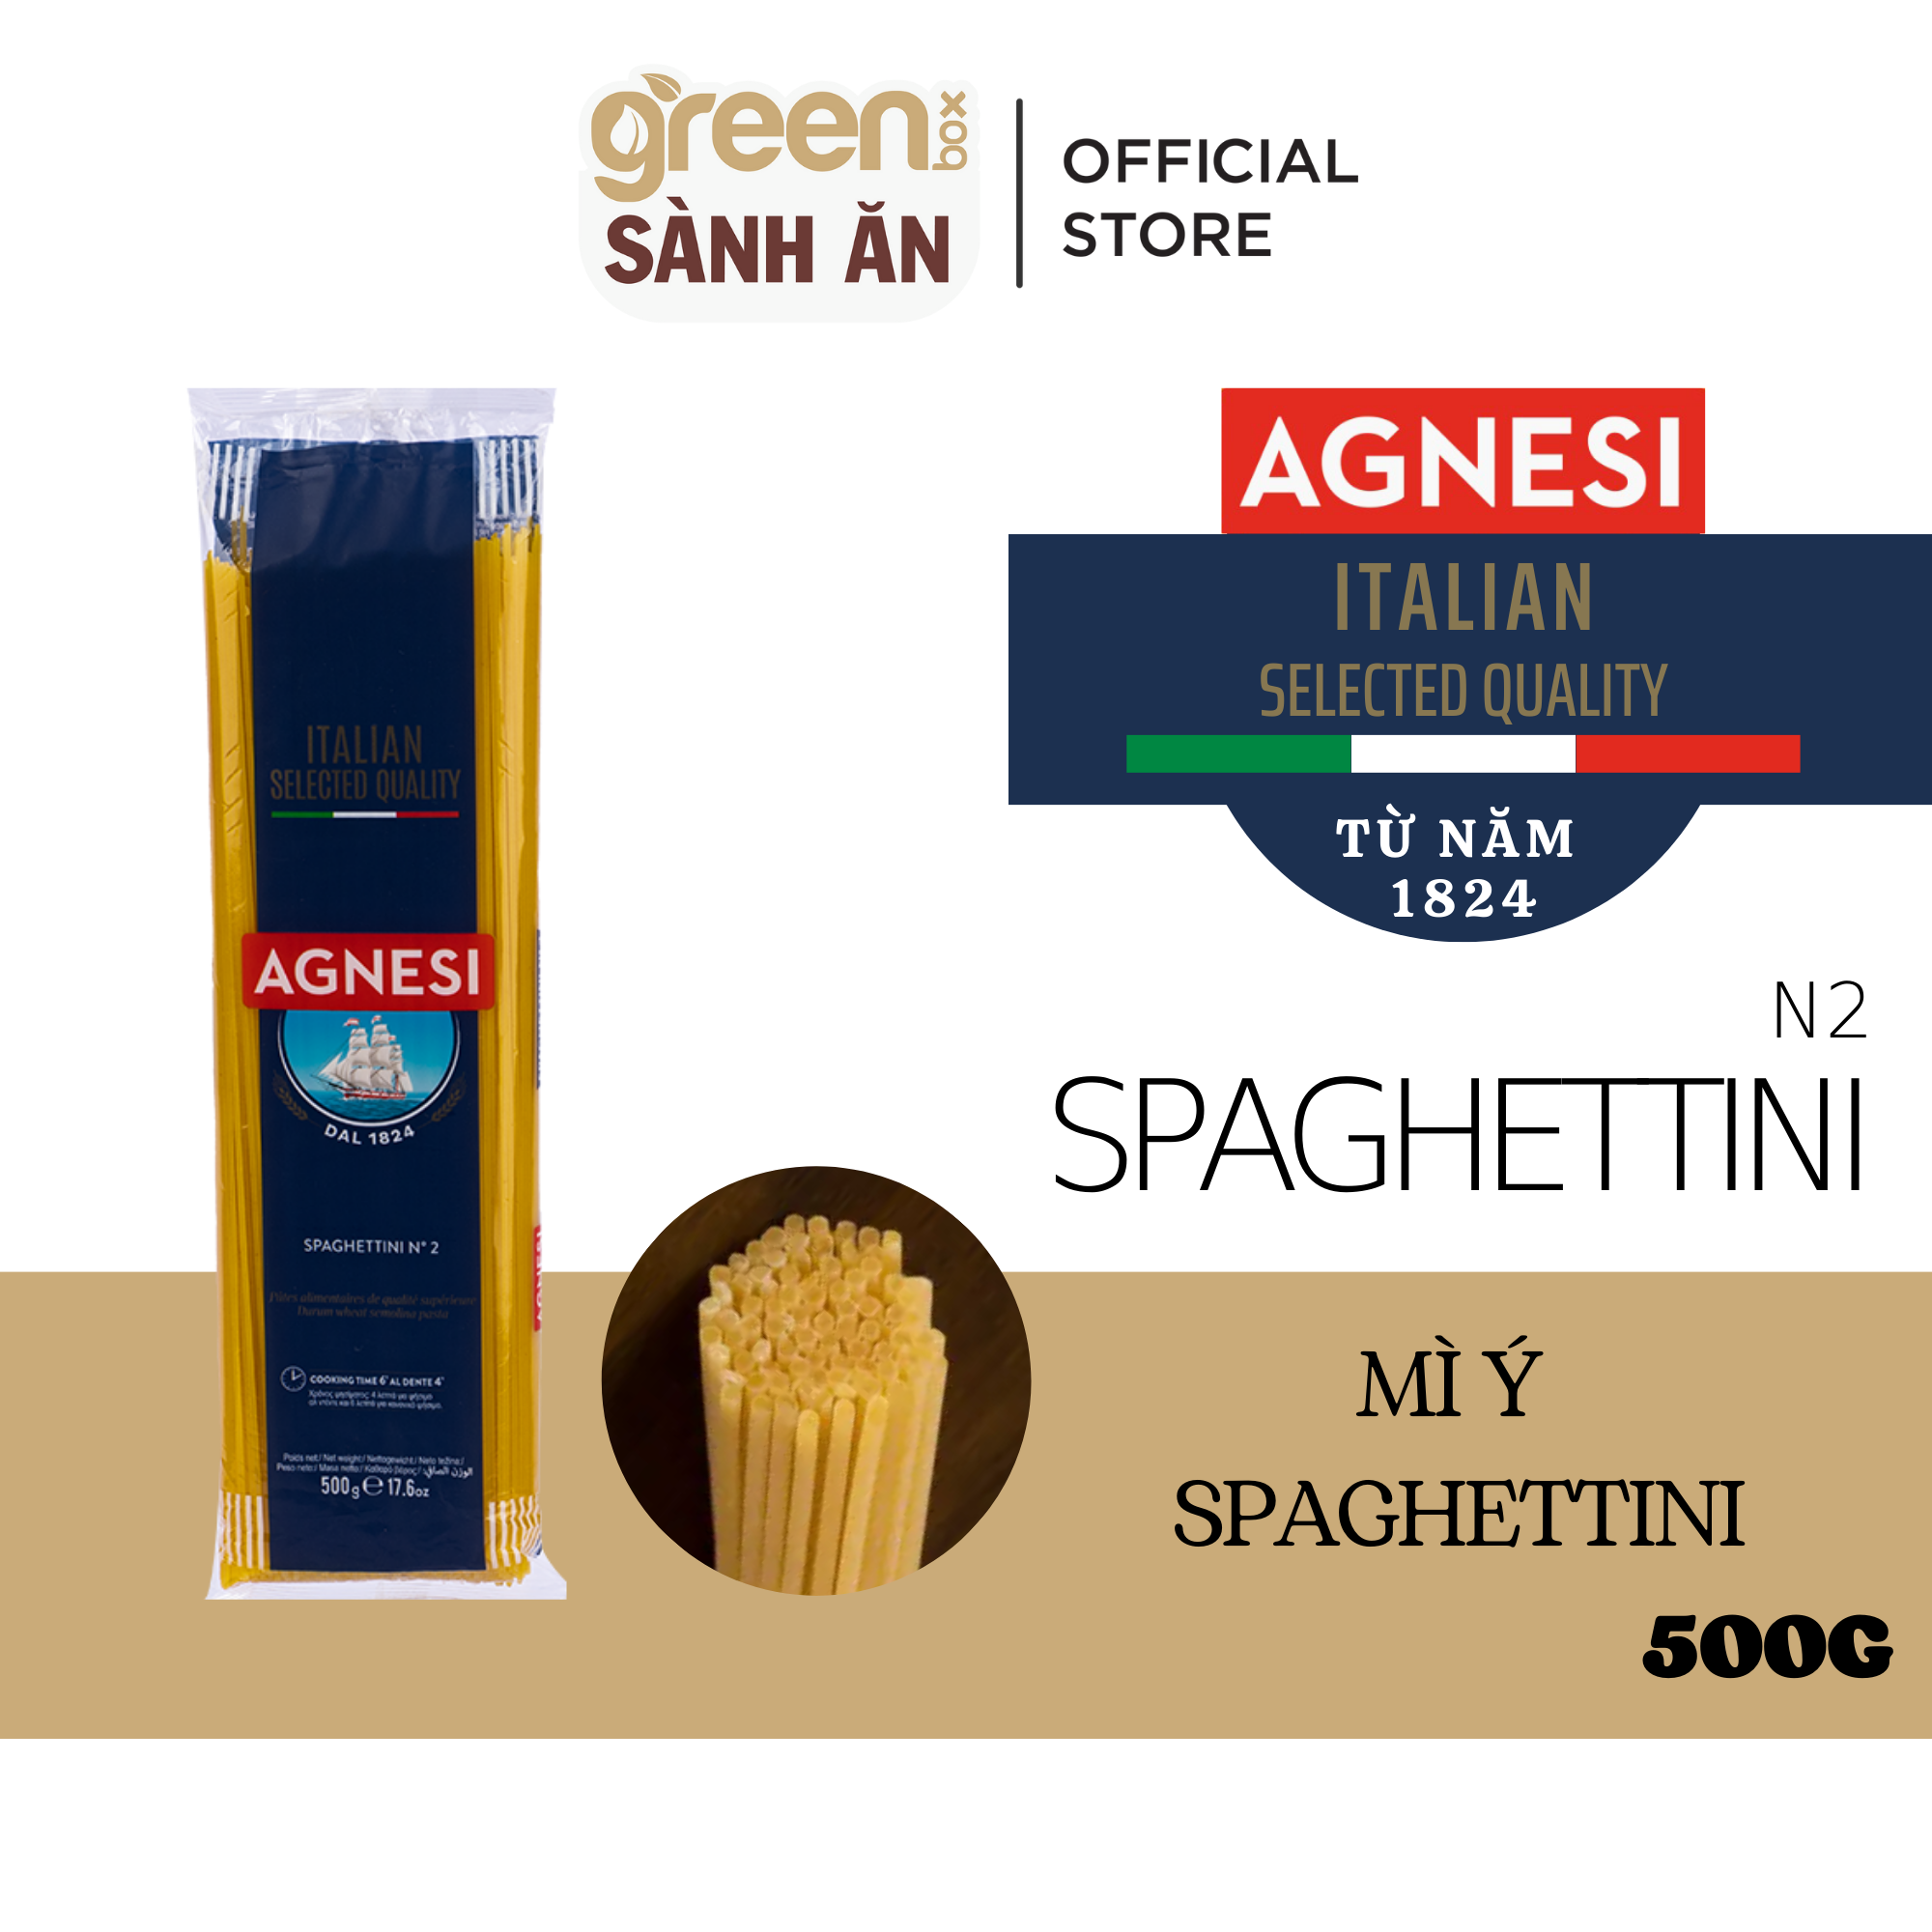 Mì ý sợi nhỏ Spaghettini làm từ lúa mì Semolina cao cấp Agnesi Ý 500g nấu